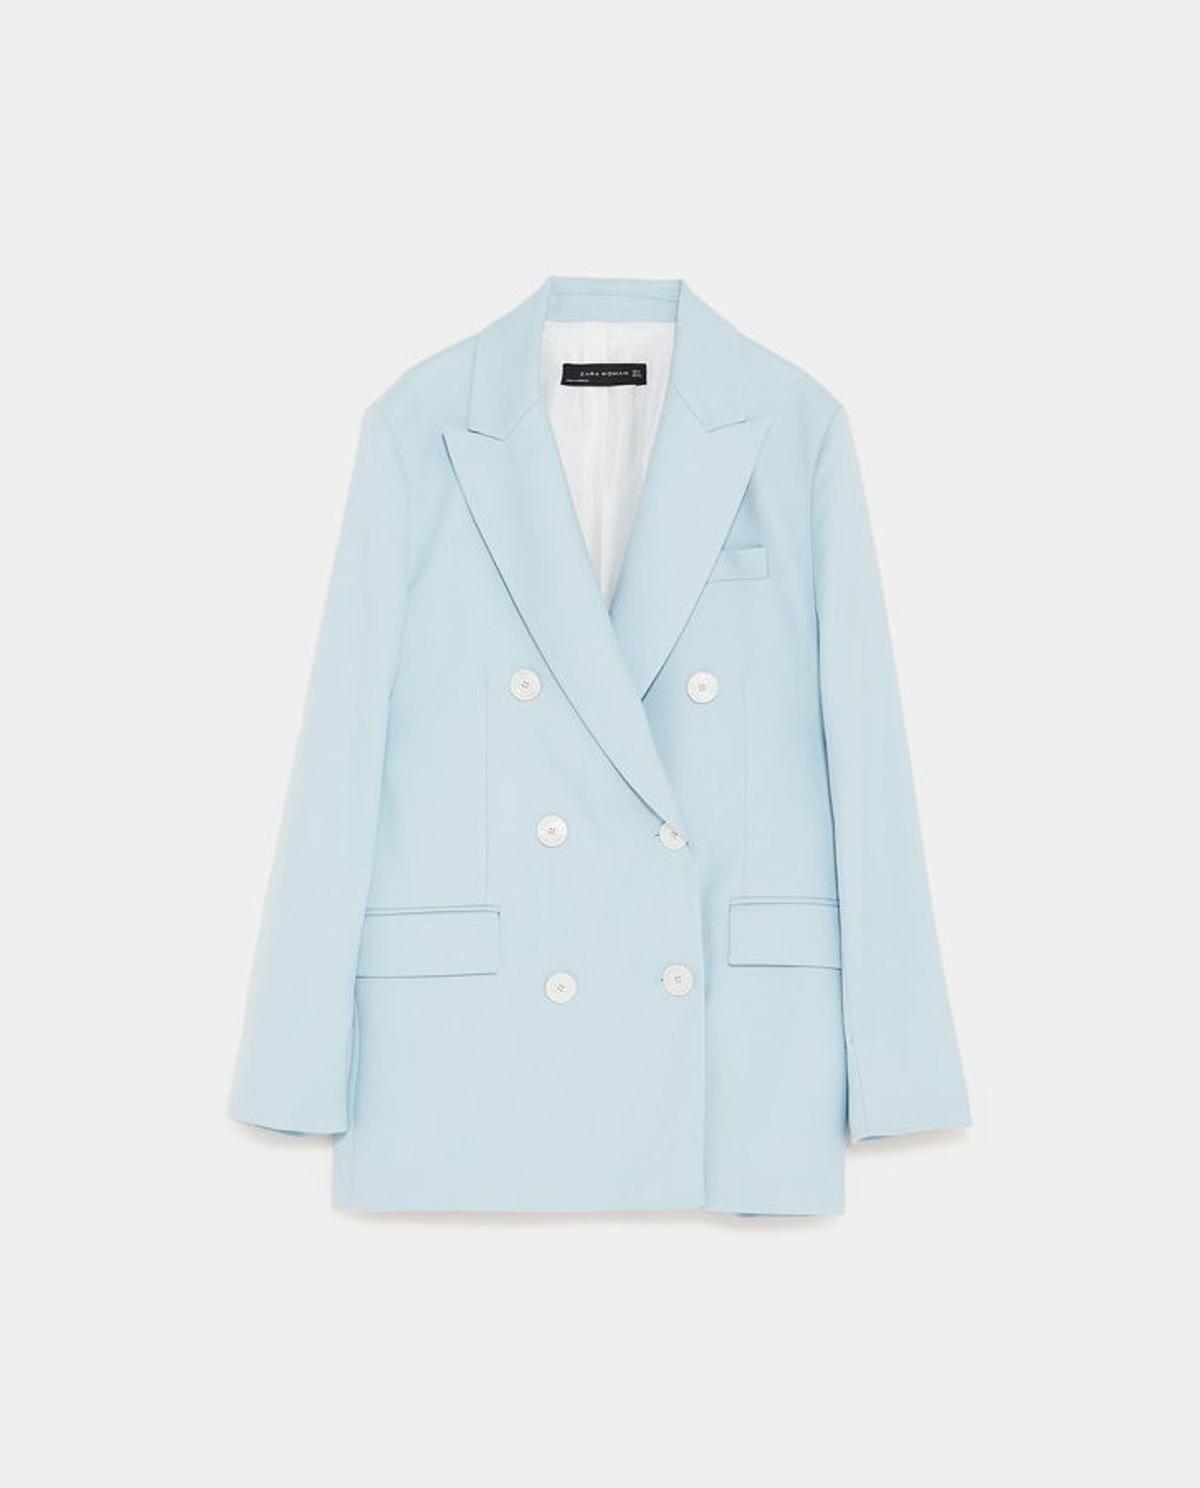 Trajes de Zara en colores pastel: chaqueta azul celeste